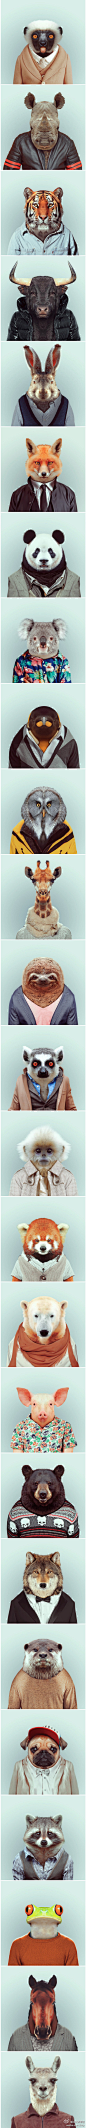 【1.2.3 茄子！】动物穿上人类的毛衣、衬衫会是什么样子？西班牙摄影师Yago Partal将动物的头像与人类的上半身拼合在一起，好像每个动物都在为身份证拍证件照，幽默地展现出不同动物的个性风格。「转」